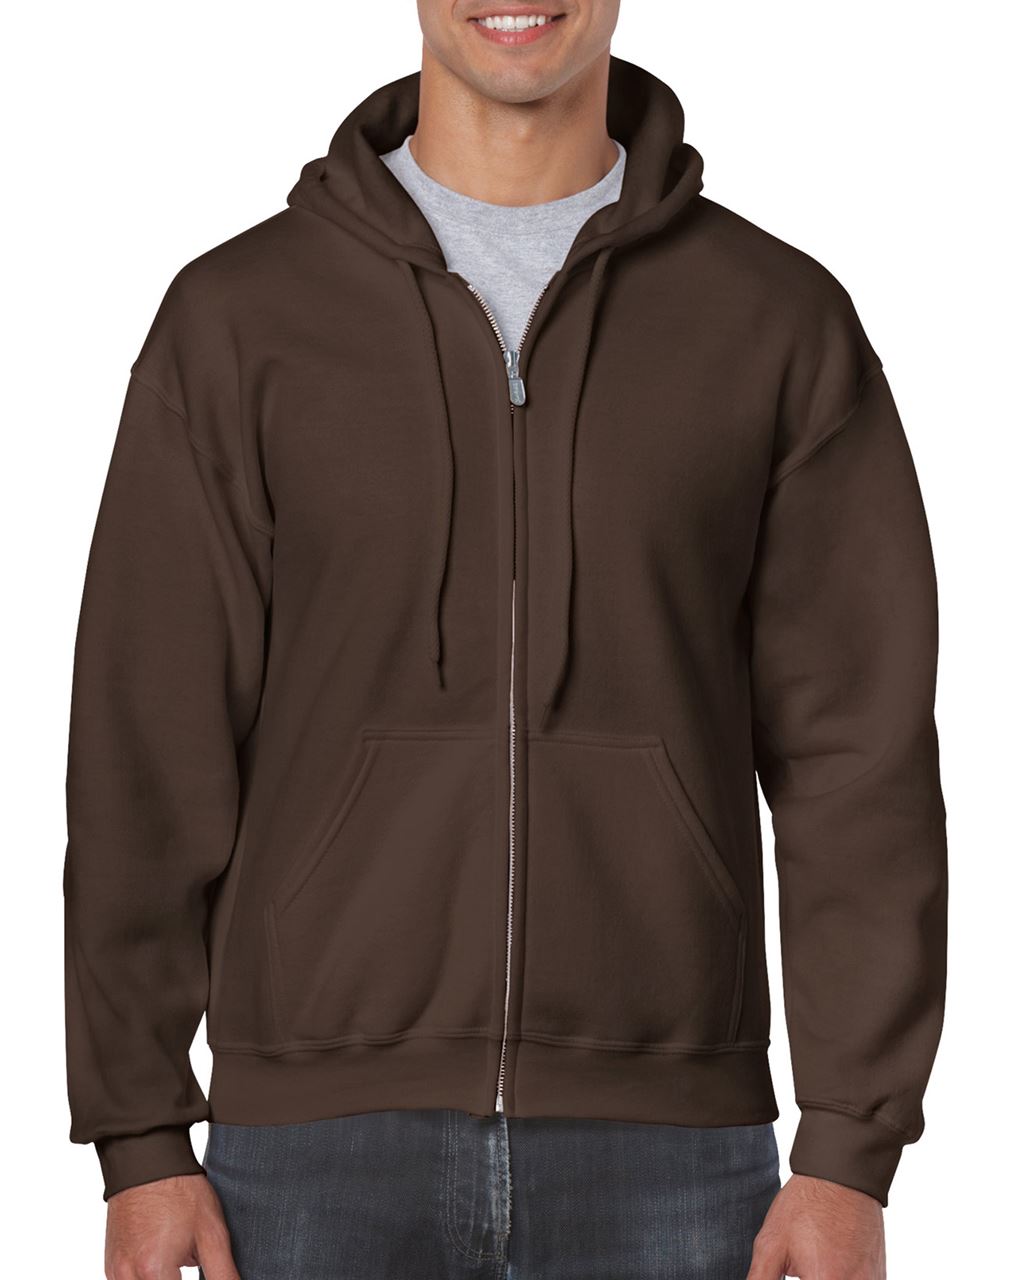 Gildan Heavy Blend™ Adult Full Zip Hooded Sweatshirt - brown